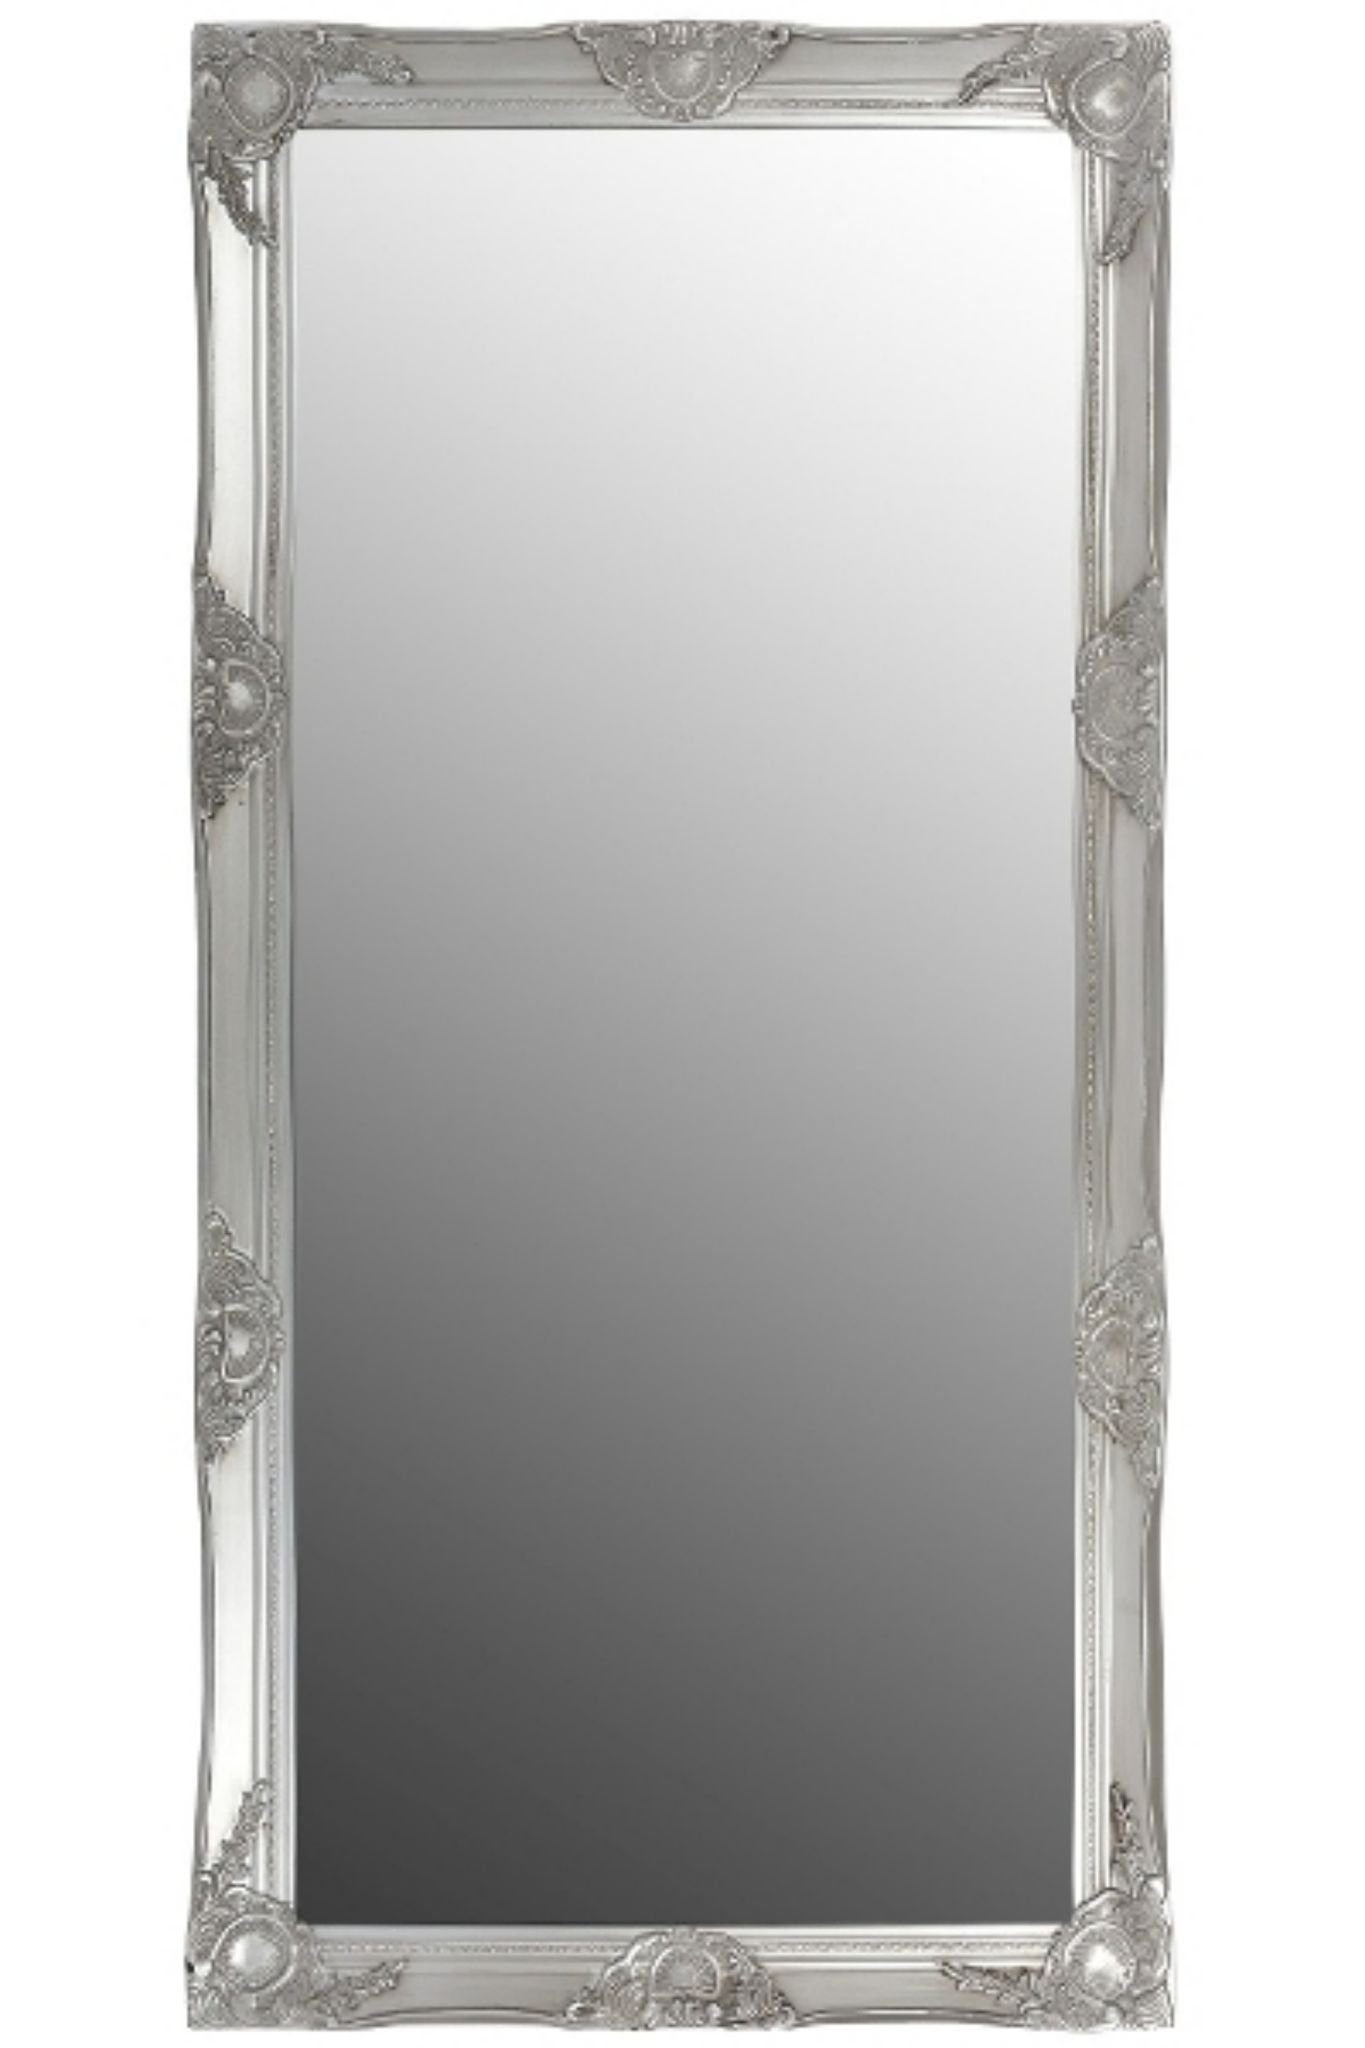 Spiegel Wandspiegel silber Barock silber Spiegel: 187cm, elbmöbel Ganzkörperspiegel 187x62x7